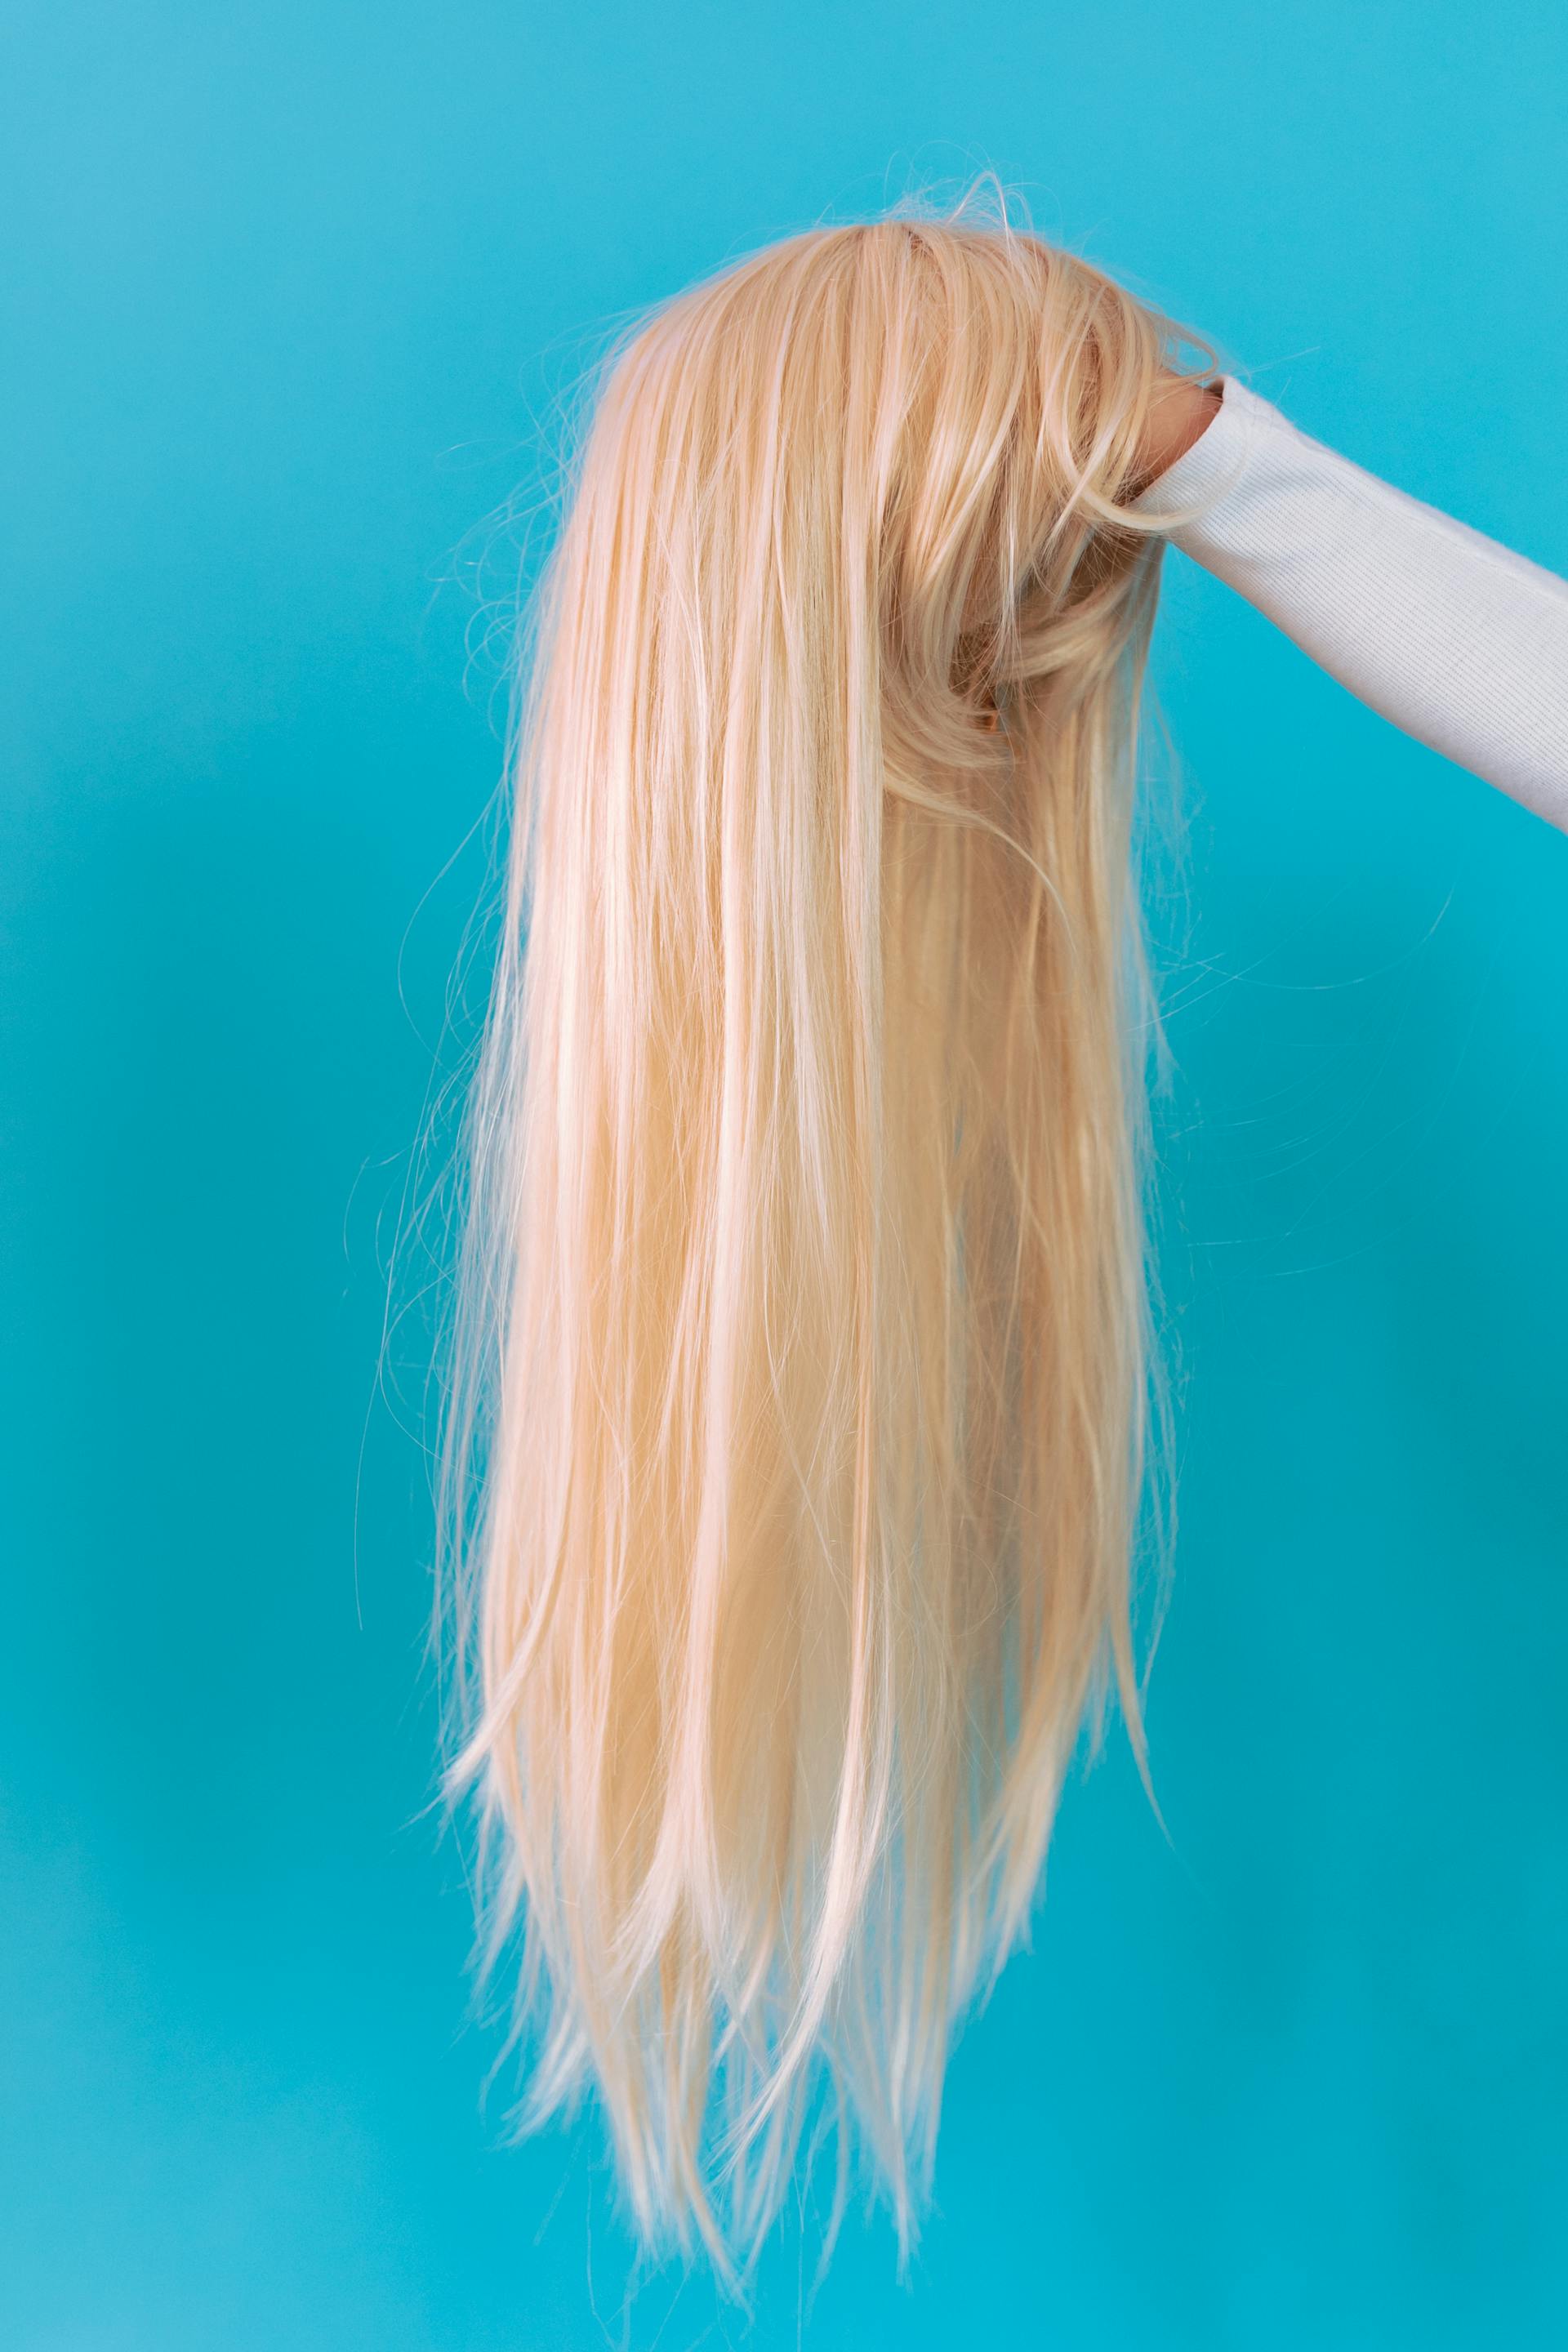 Mujer sujetando una peluca rubia | Fuente: Pexels